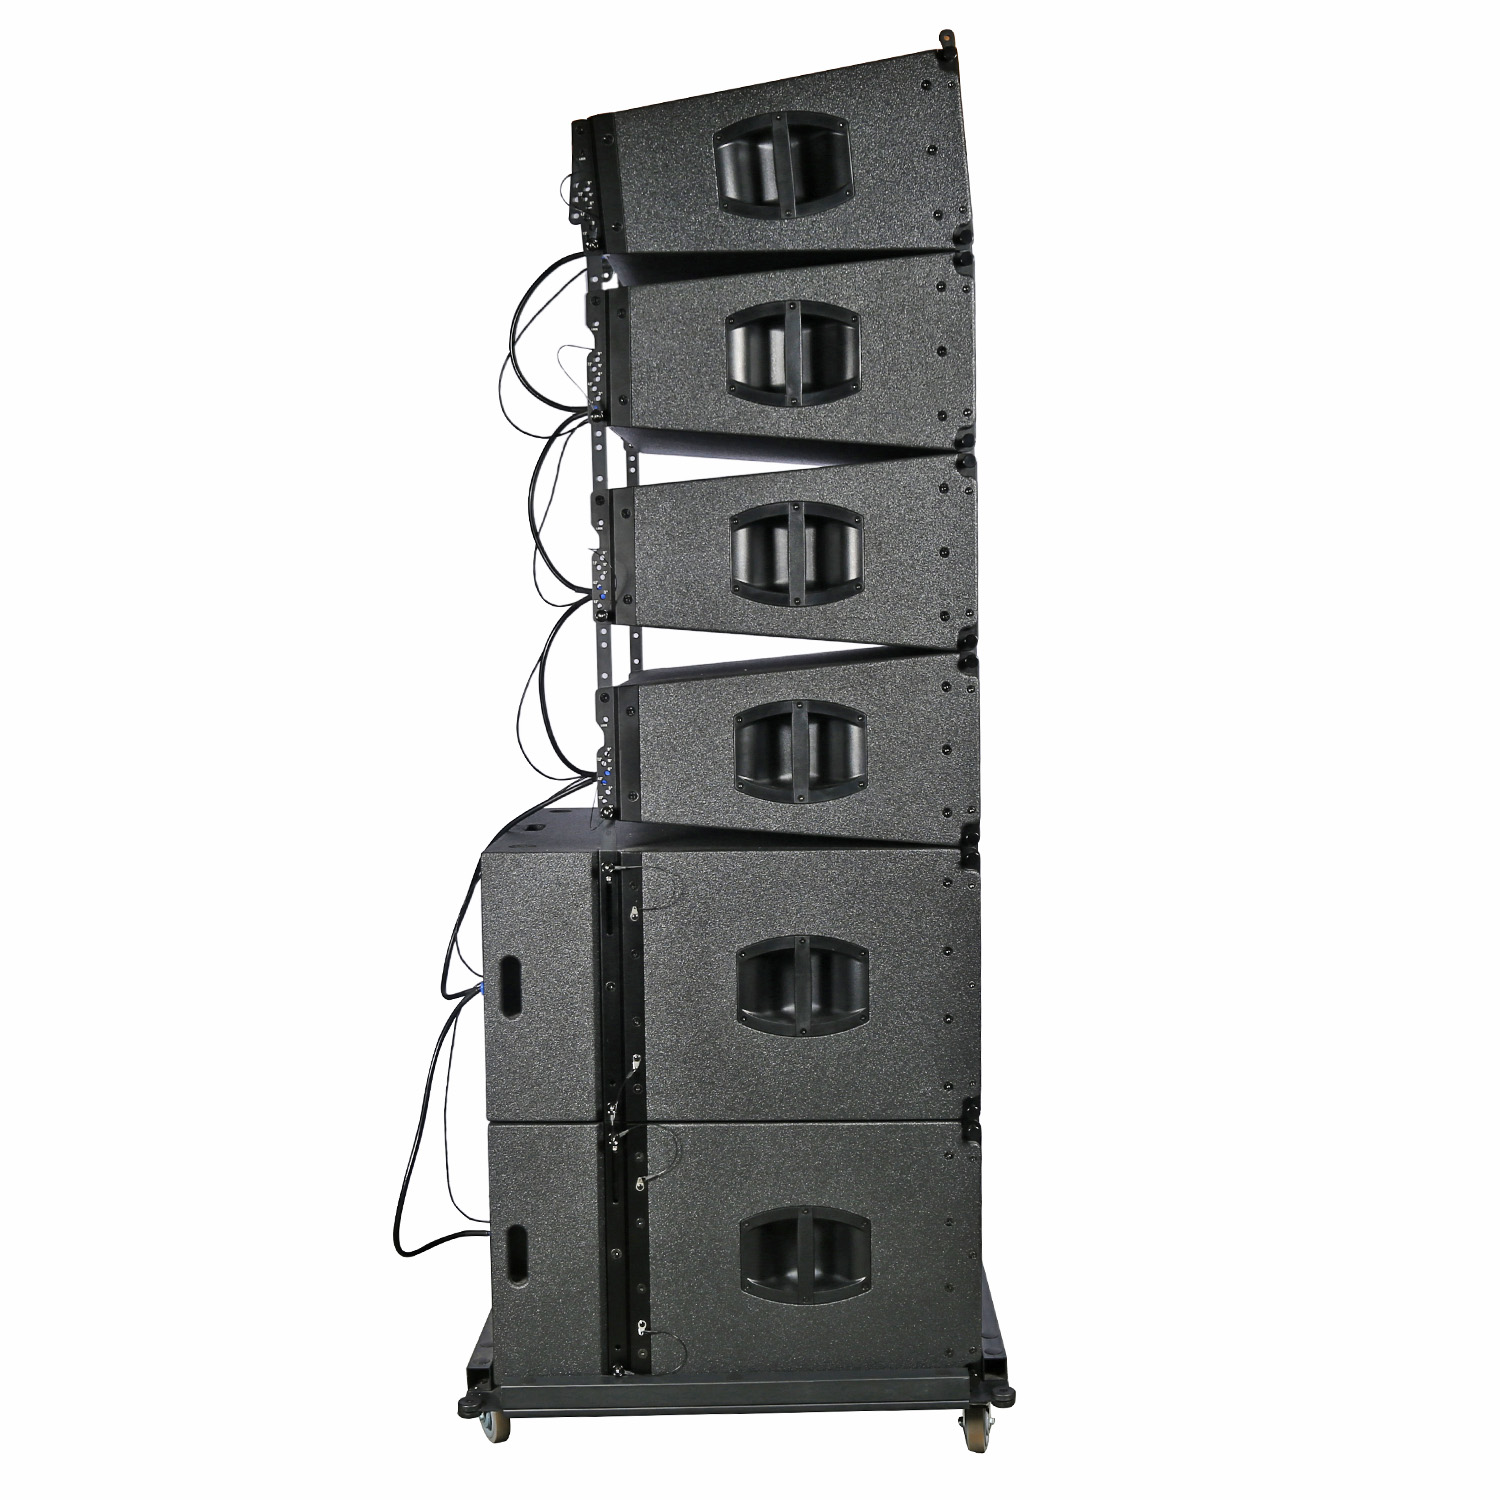 LA310P & LA215P Dual 10 Inch 3 Way Pro Audio Compact Active Line Array